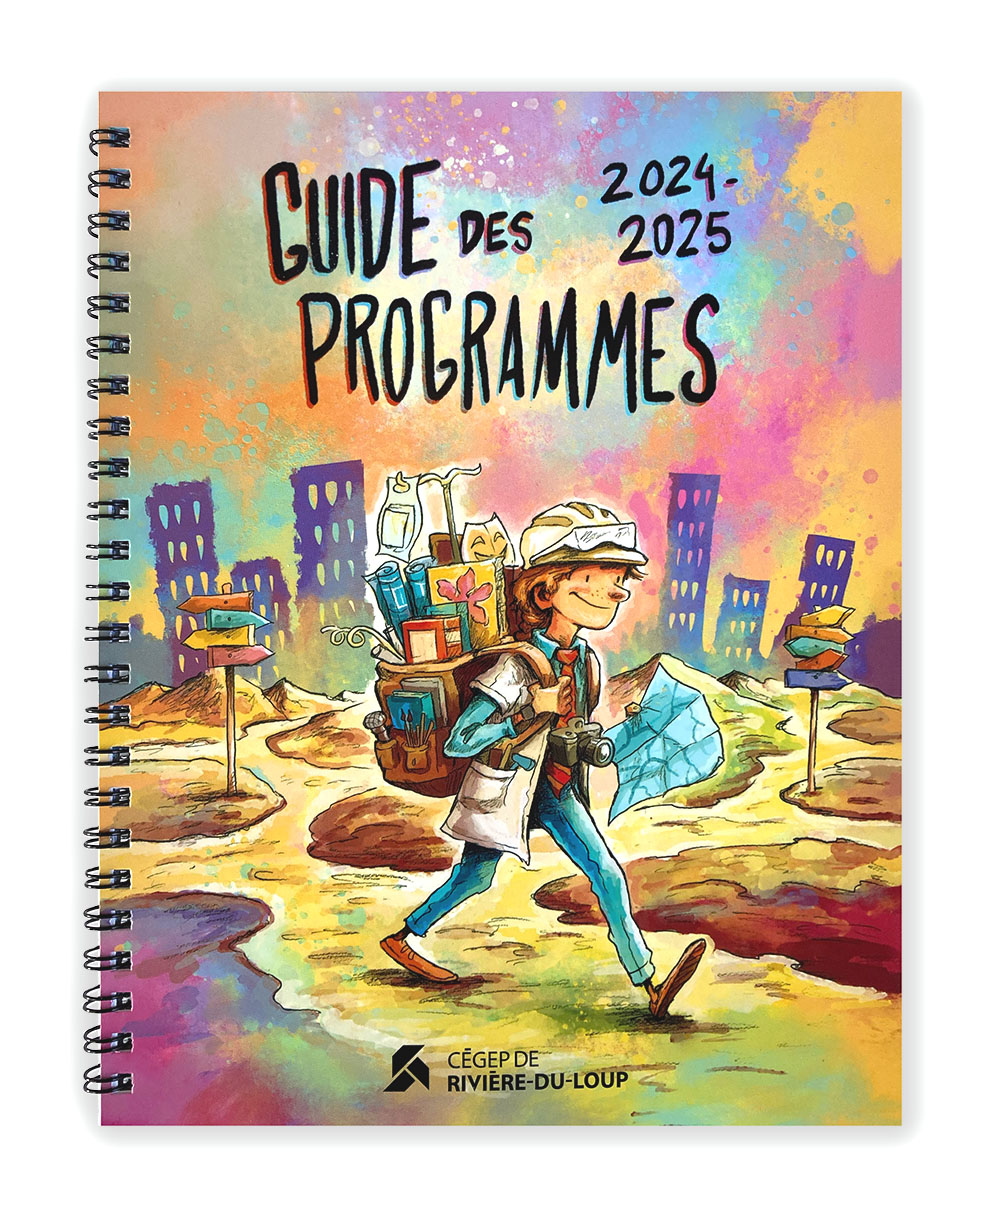 Guide des programmes 2024-2025 du CEGEP du Rivière-du-Loup